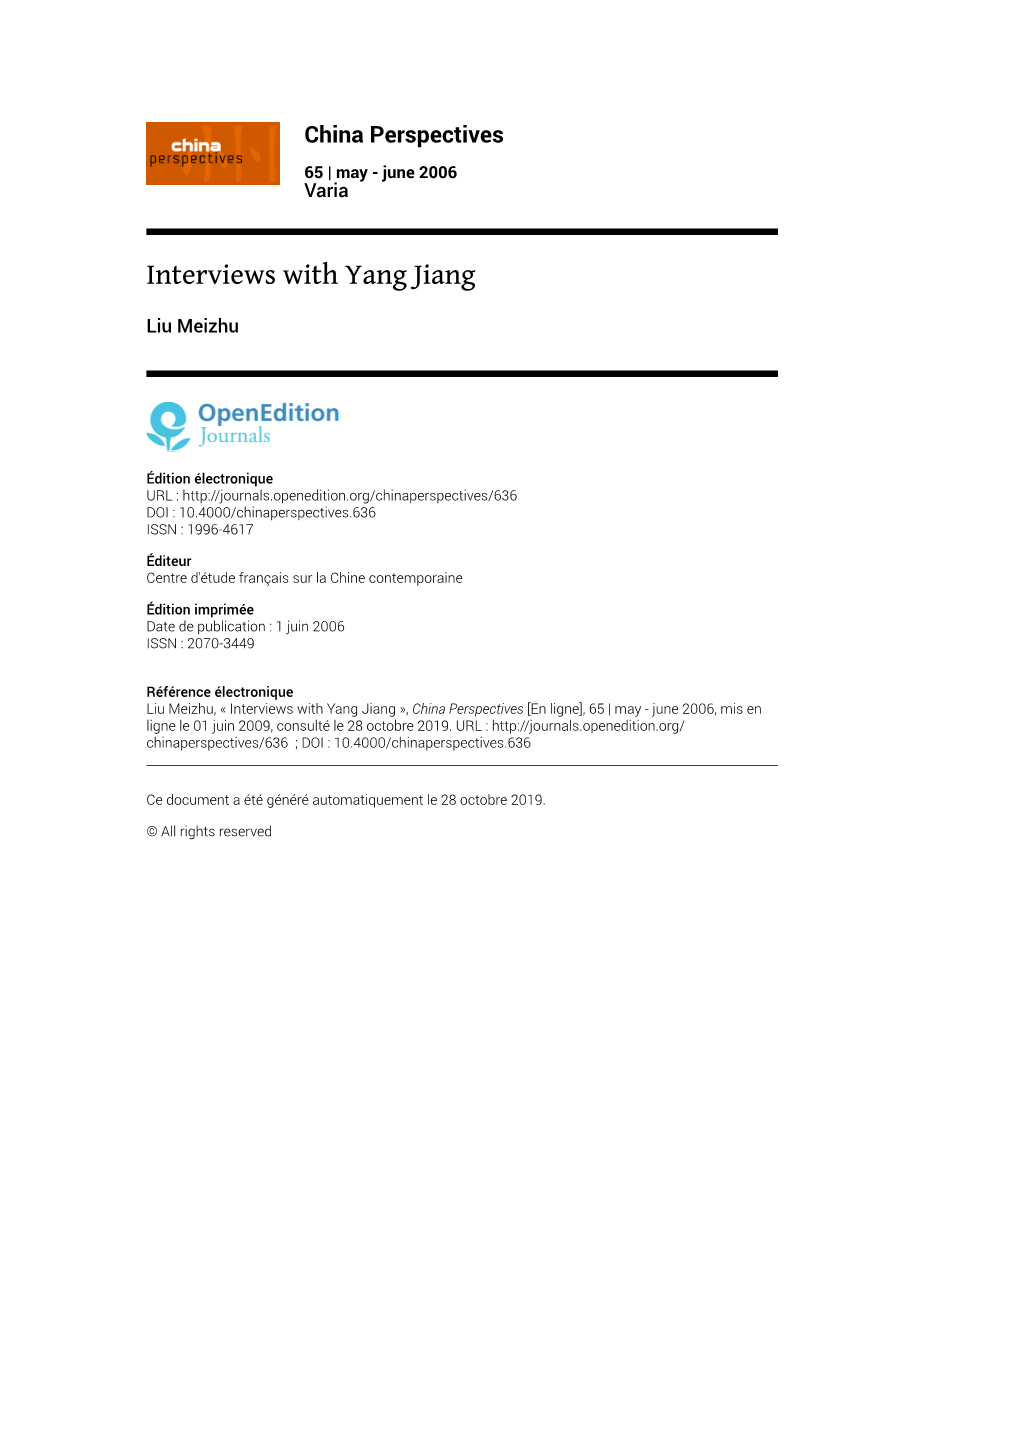 China Perspectives, 65 | May - June 2006 Interviews with Yang Jiang 2